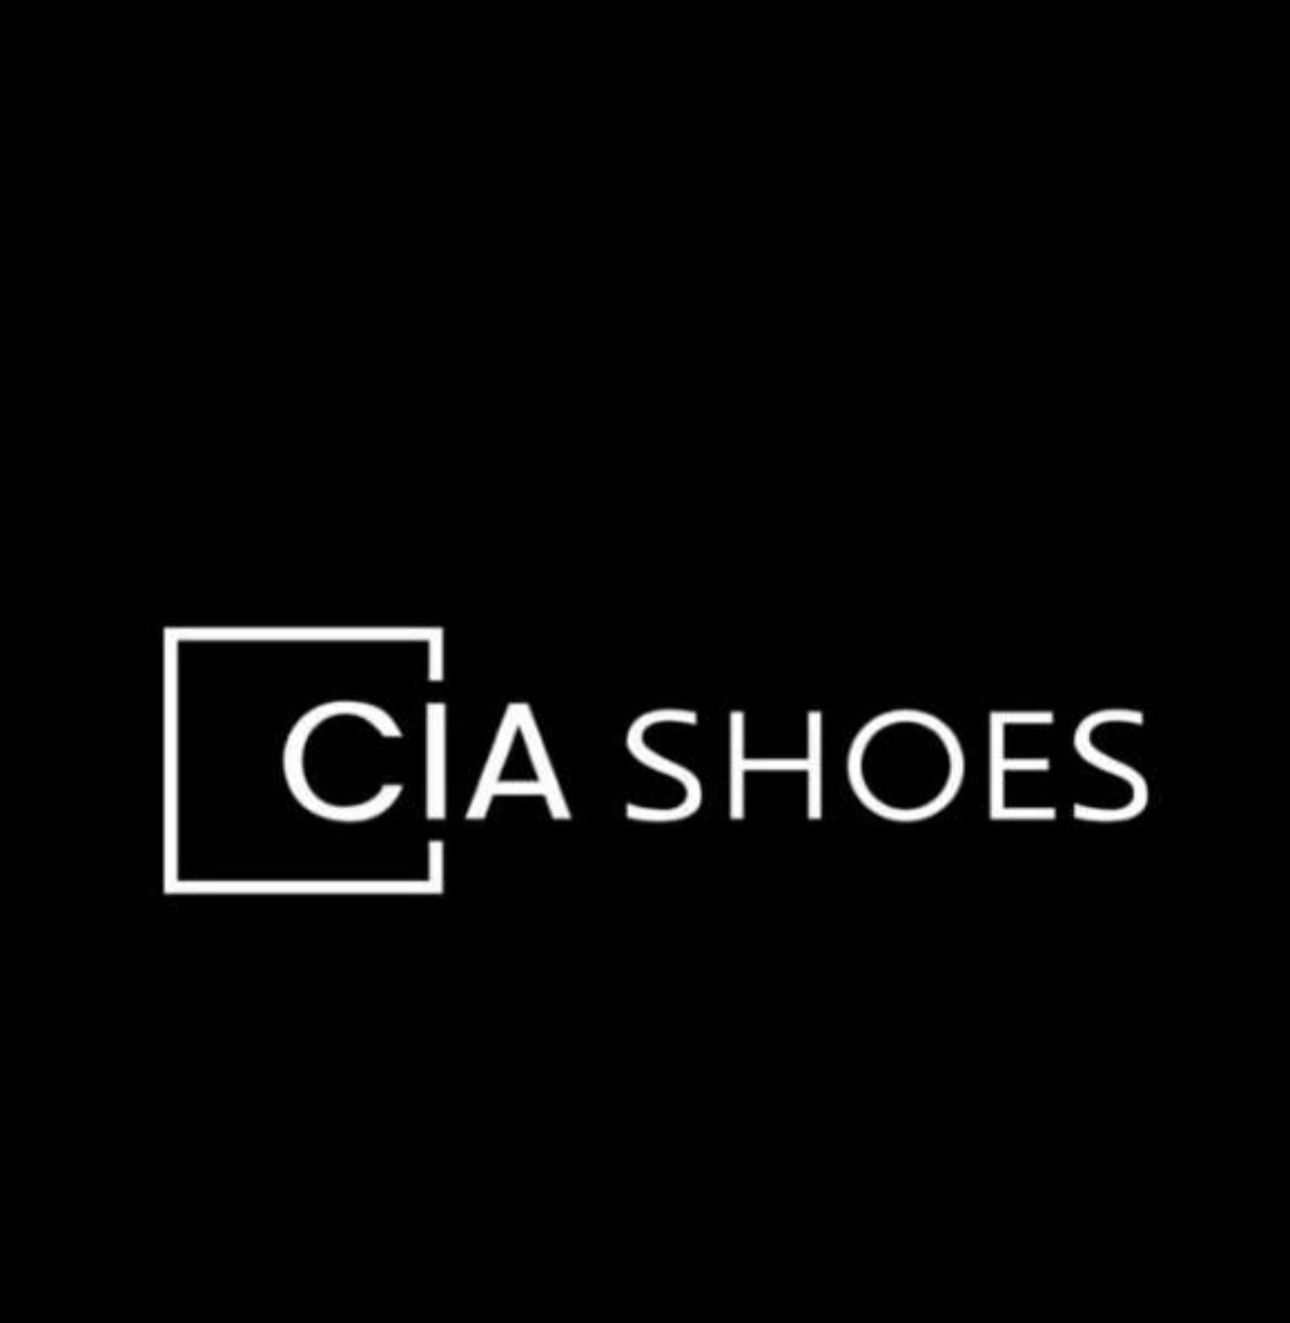 Cia Shoes indústria e comércio de calçados ltda